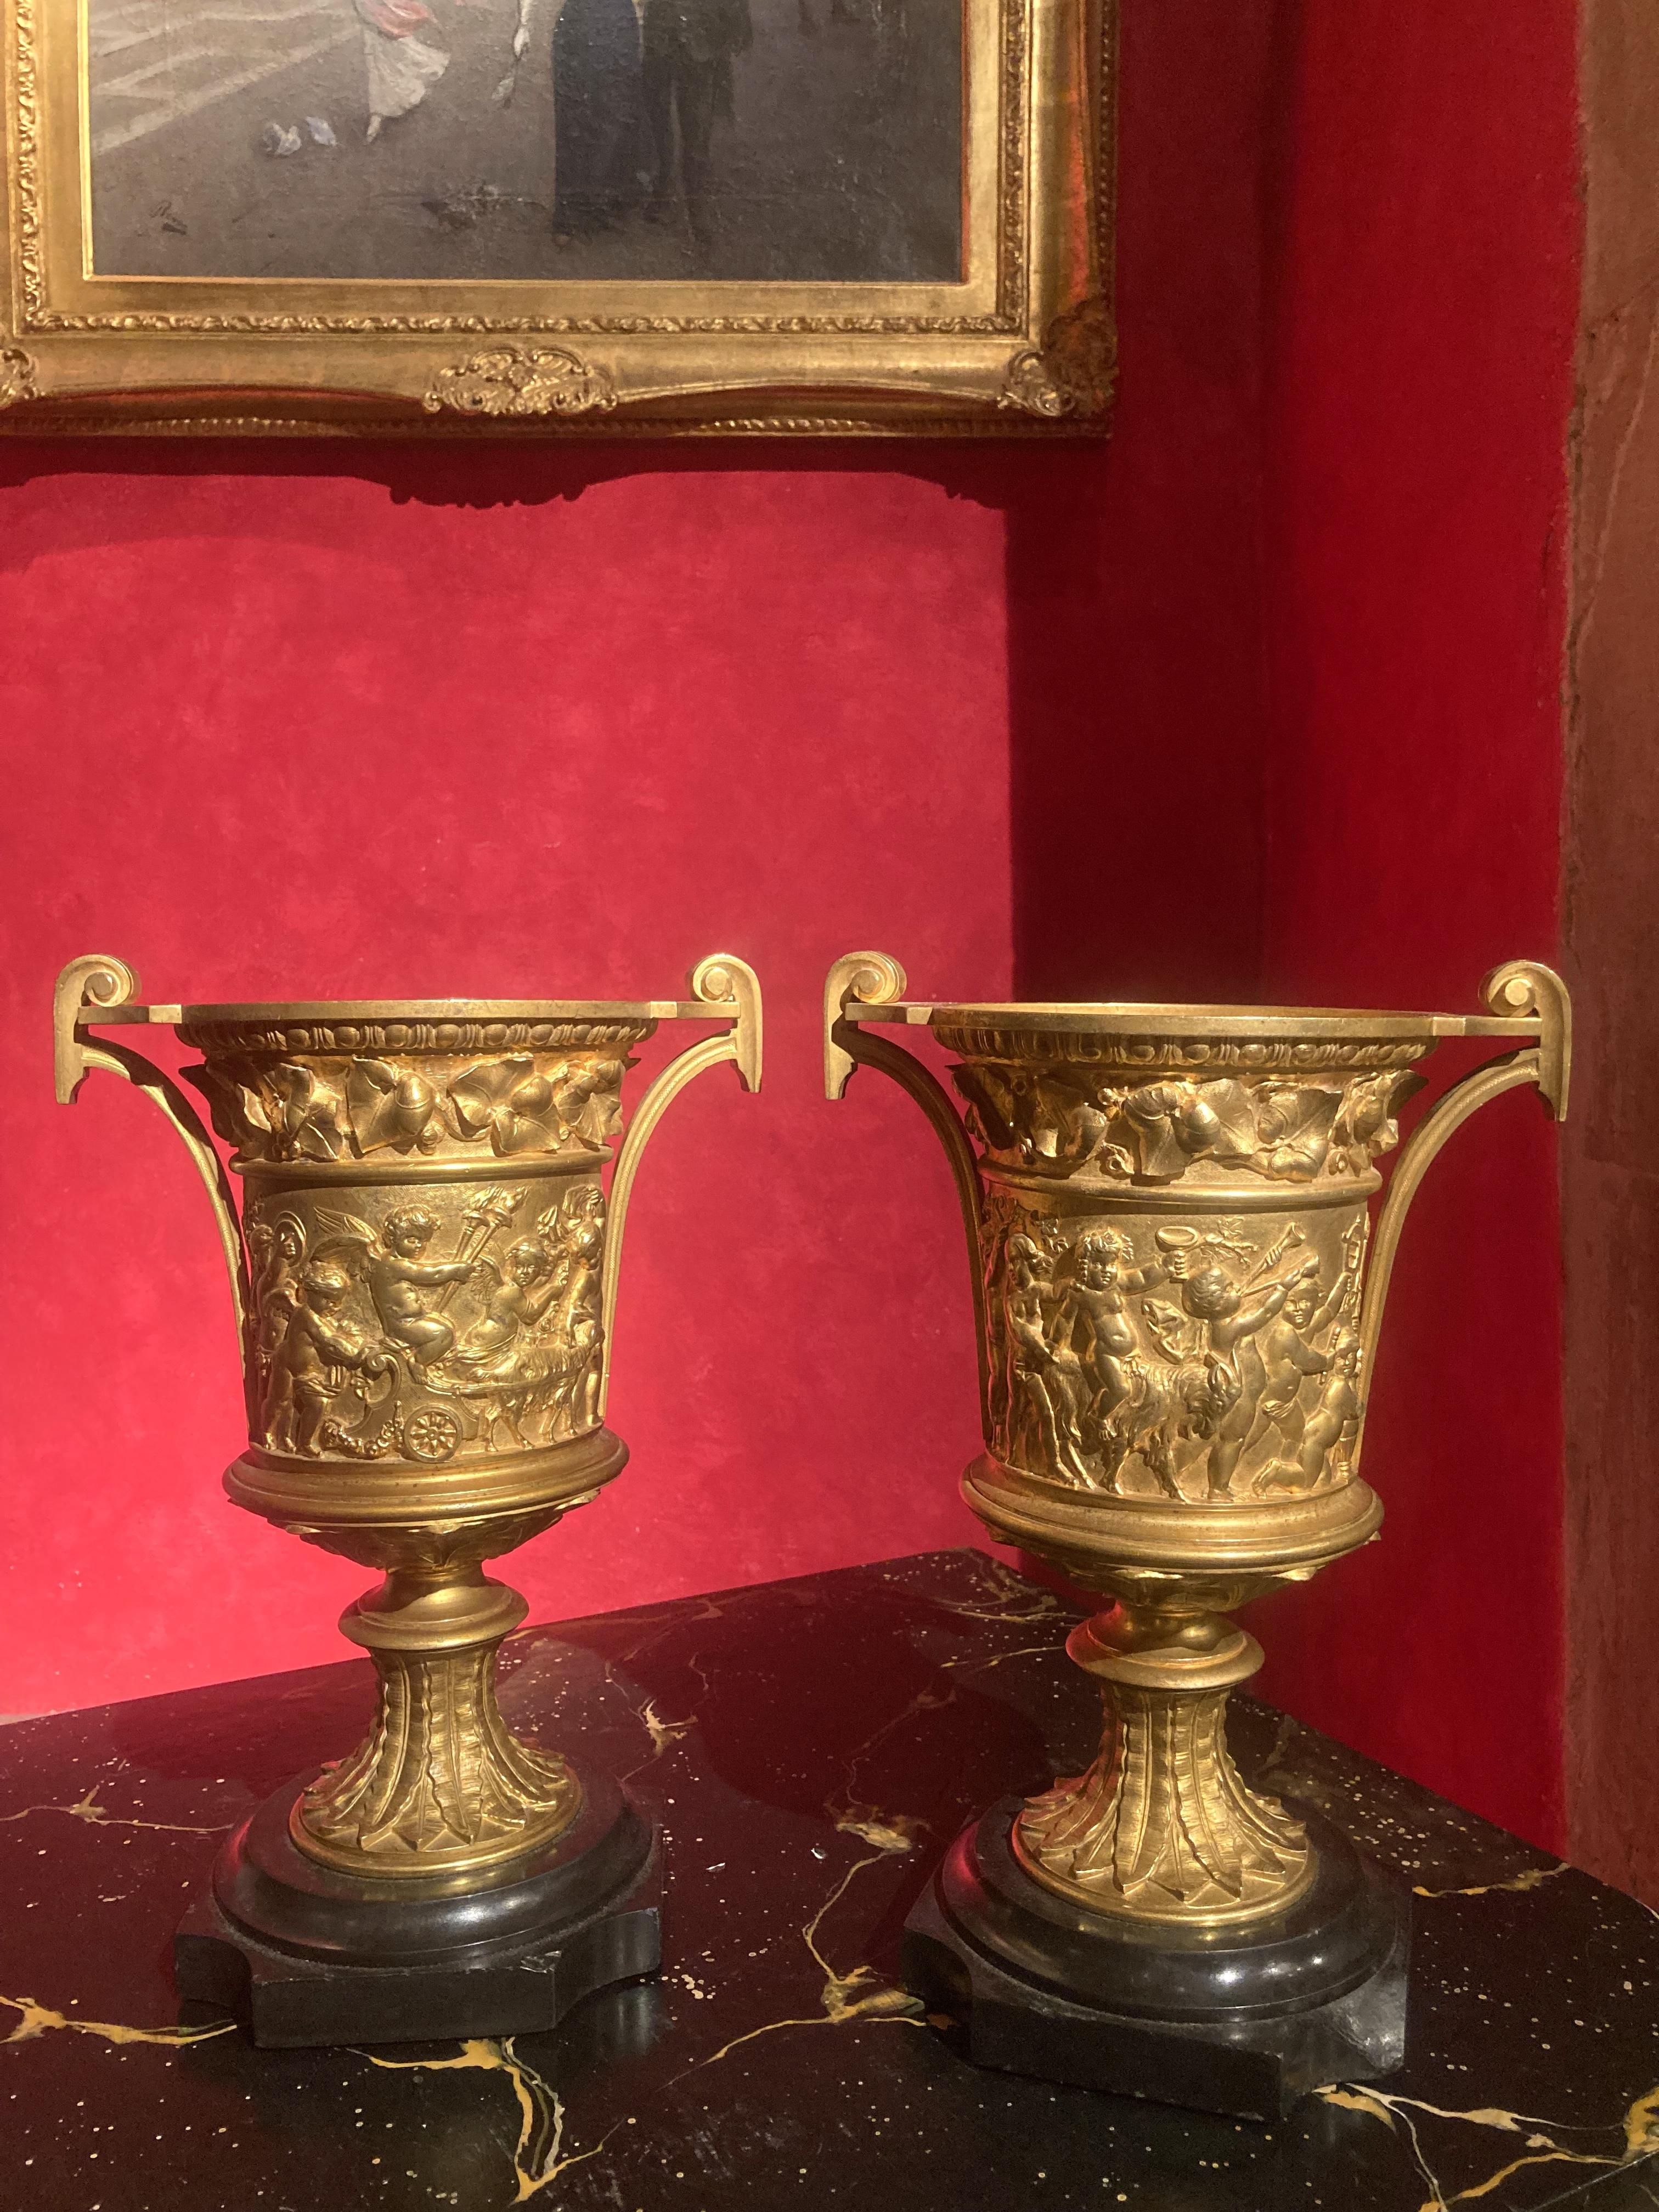 Dieses Paar französischer Louis-XVI-Vasen mit Ormolu-Griff stammt aus dem späten 18. Jahrhundert (1700). Diese außergewöhnlichen Vasen in Form einer Kamapana-Urne aus vergoldeter Bronze wurden mit der alten traditionellen Technik des